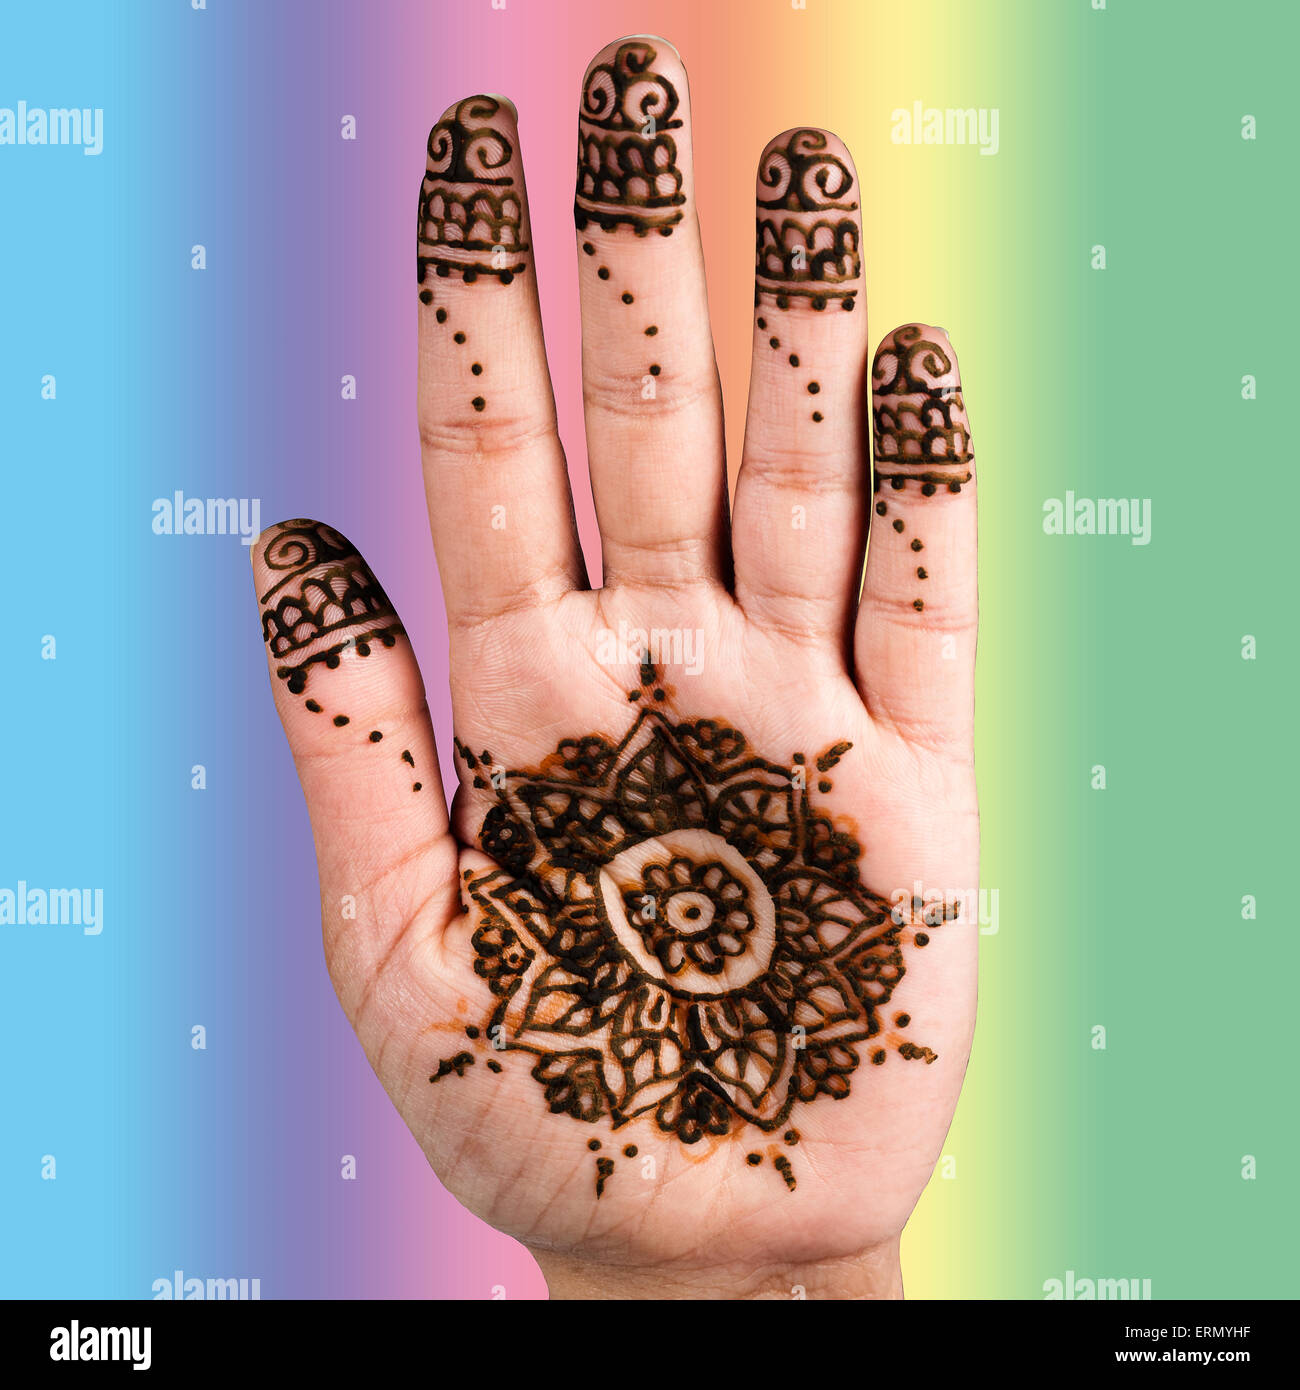 Henna tattoo art décoration main chemin de détourage fond couleur carré Banque D'Images